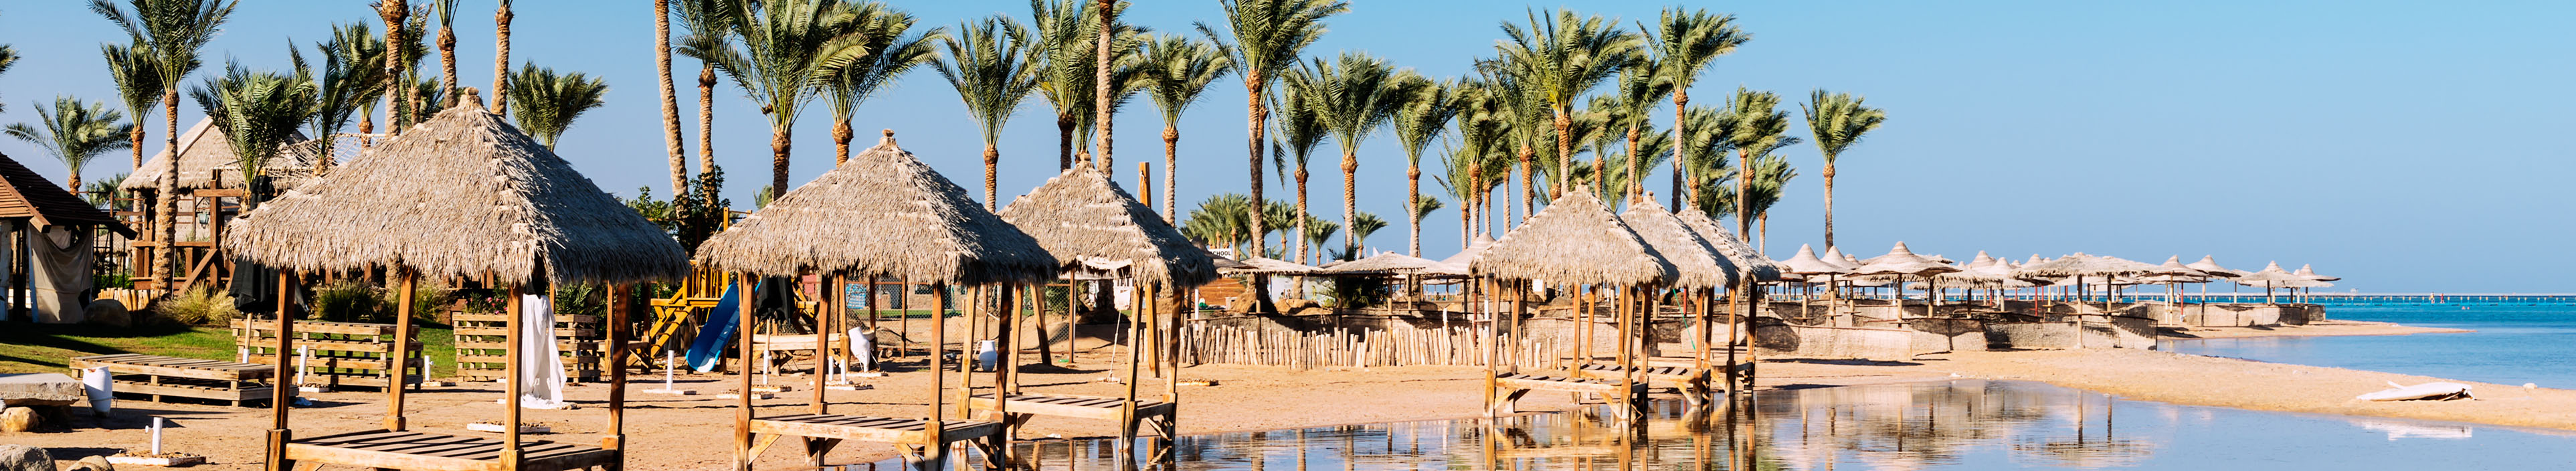 Strand und Hotel in Ägypten